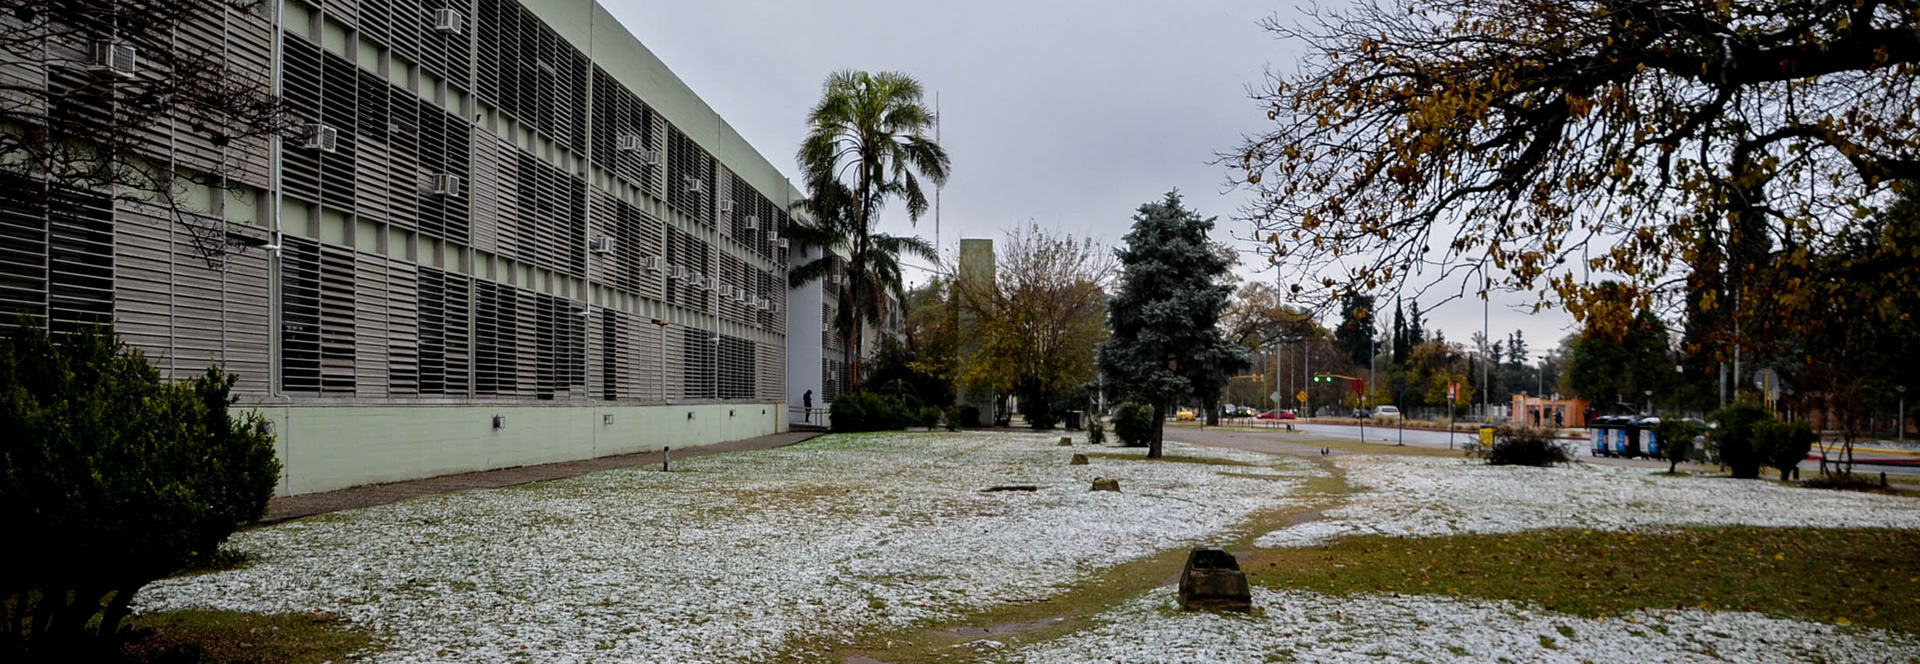 El frente de la Facultad en un día cubierto con nieve sobre el césped